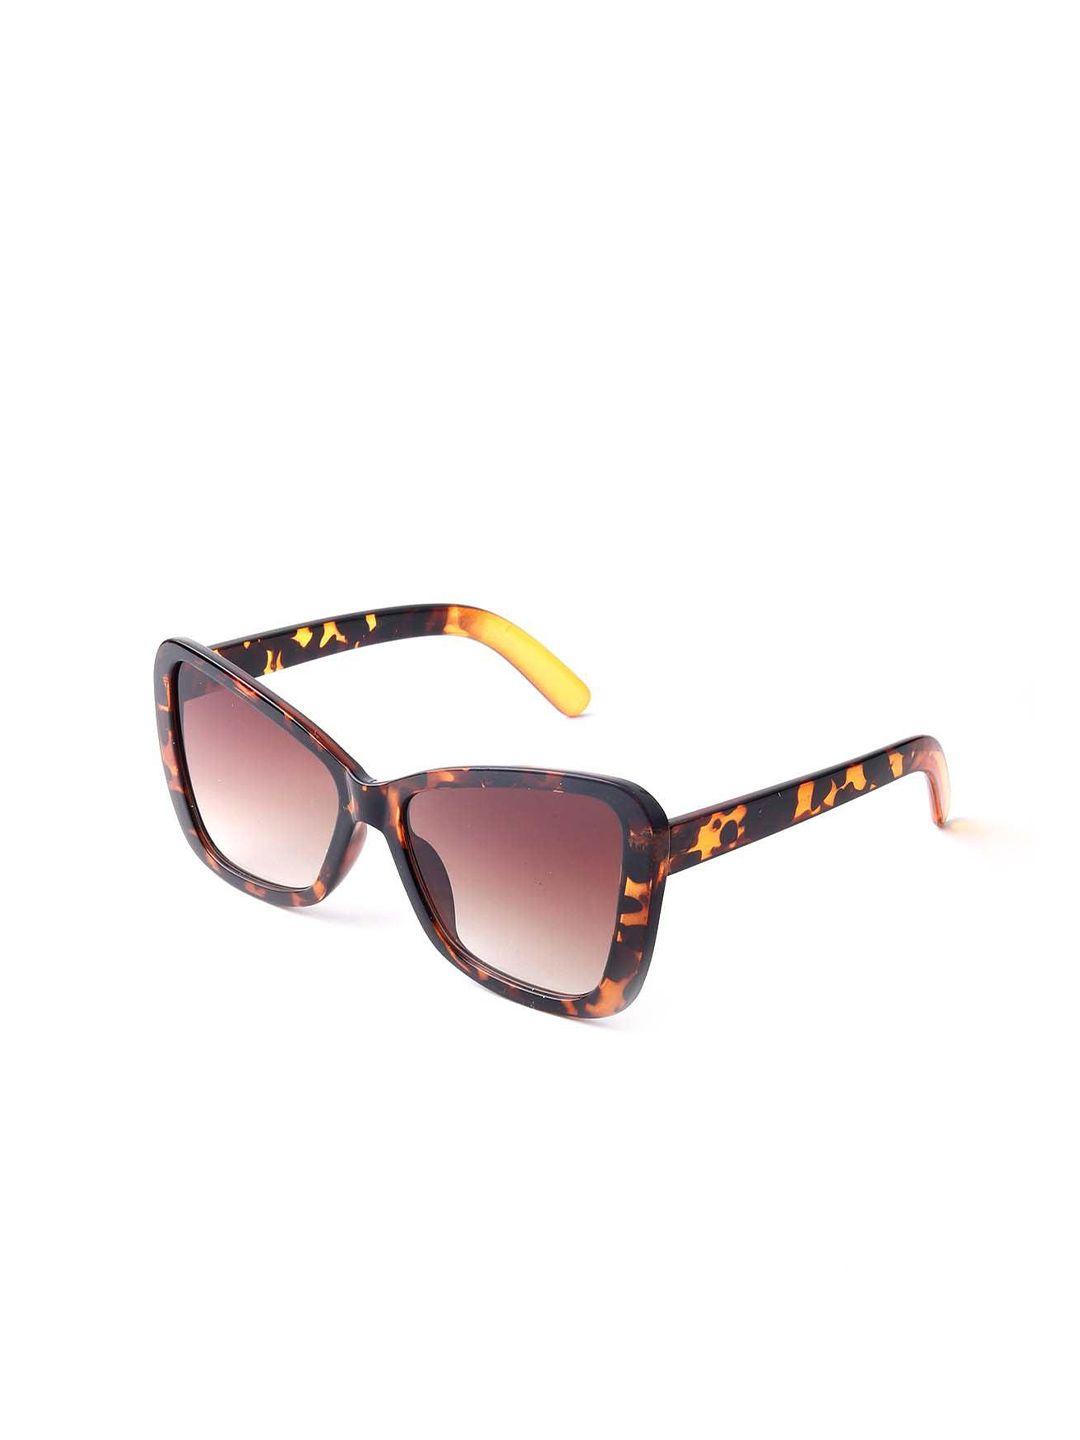 odette-oversized-uv-protected-lens-sunglasses-new579